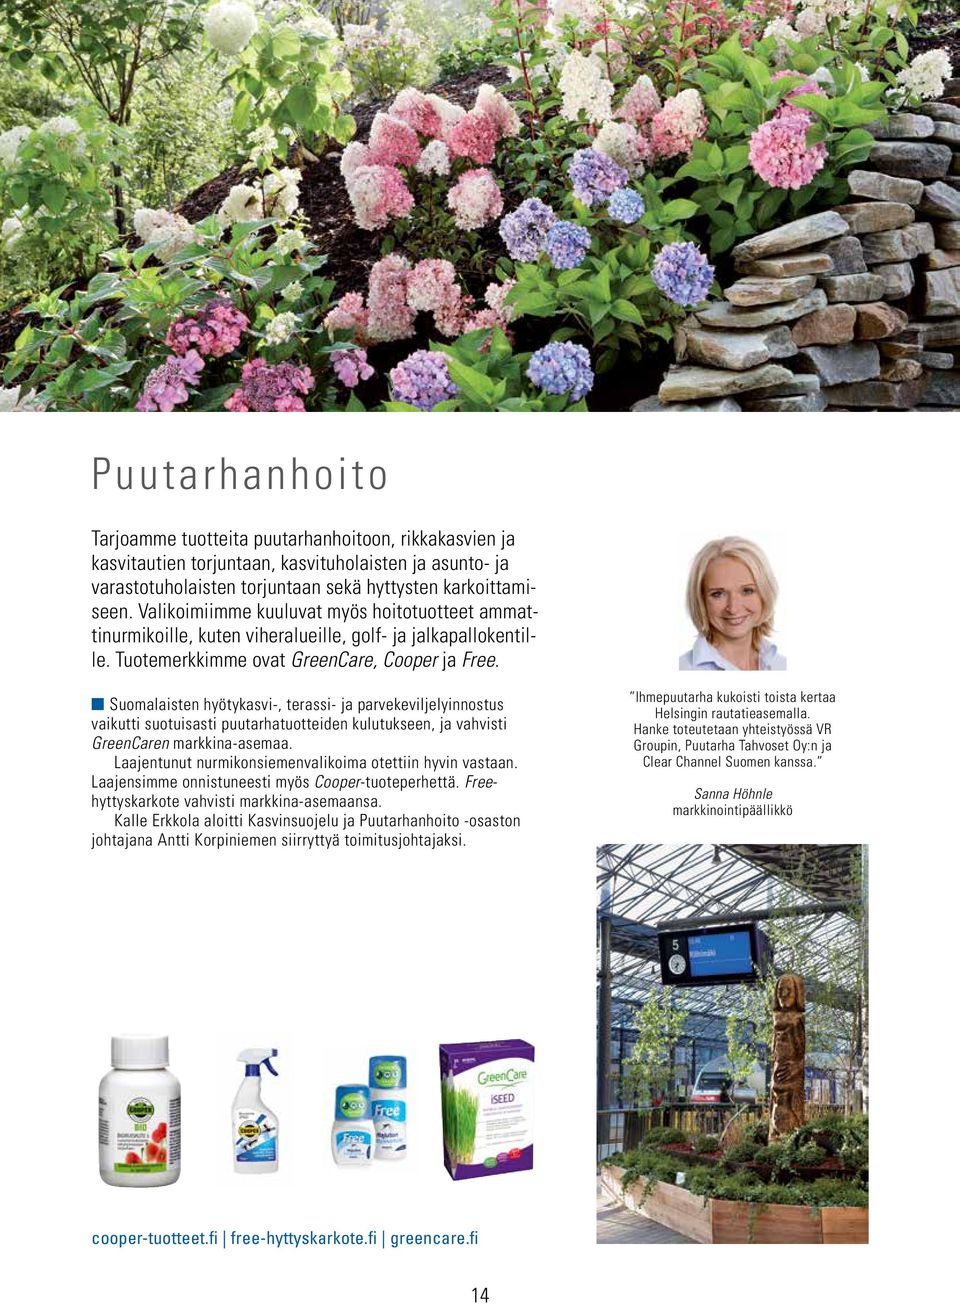 Suomalaisten hyötykasvi-, terassi- ja parvekeviljelyinnostus vaikutti suotuisasti puutarhatuotteiden kulutukseen, ja vahvisti GreenCaren markkina-asemaa.